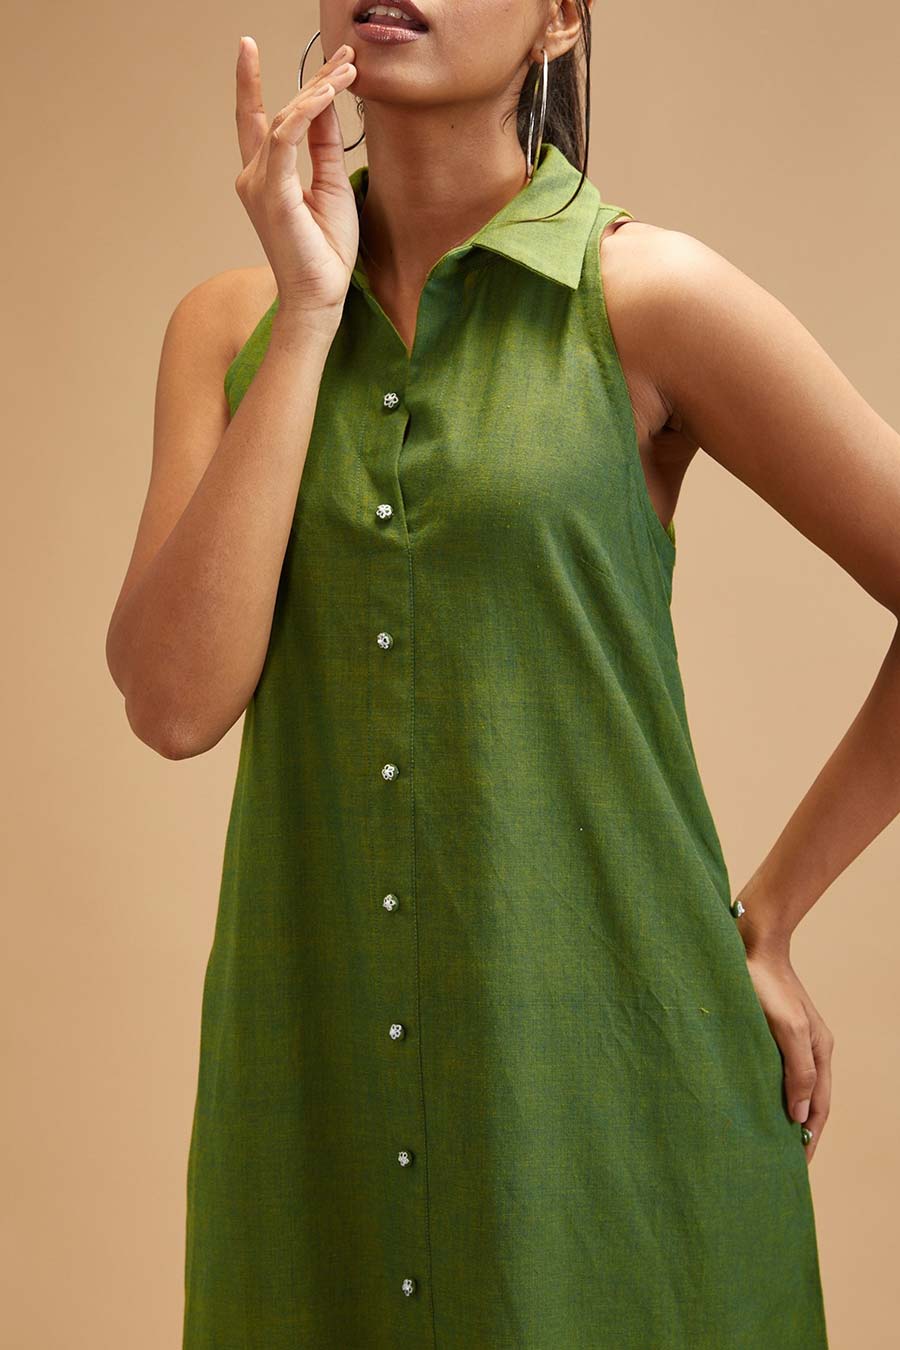 Basil Green Collar Dress